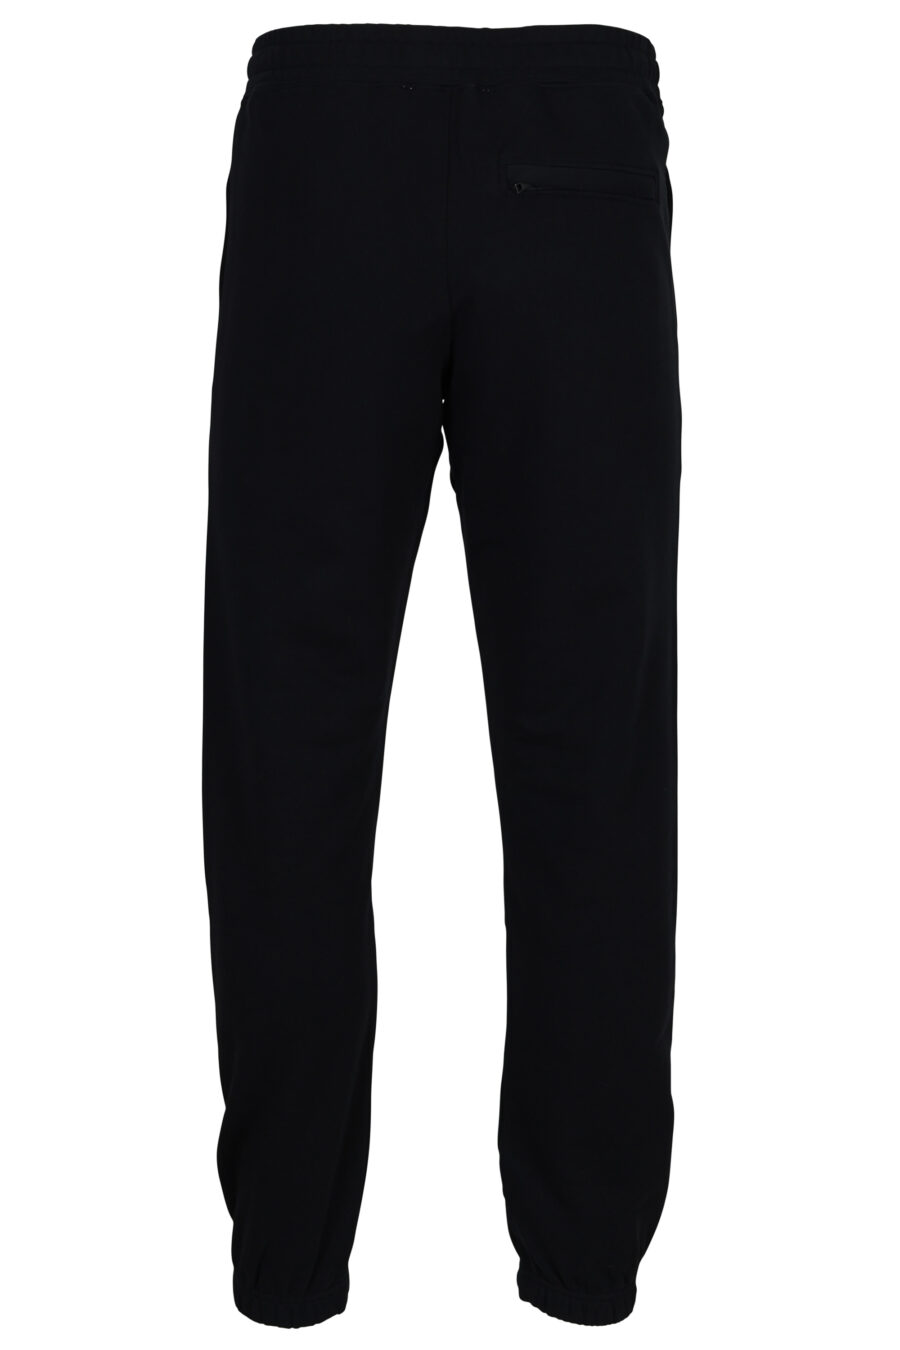 Pantalón de chándal negro con logo "teddy" en goma - 889316852967 1